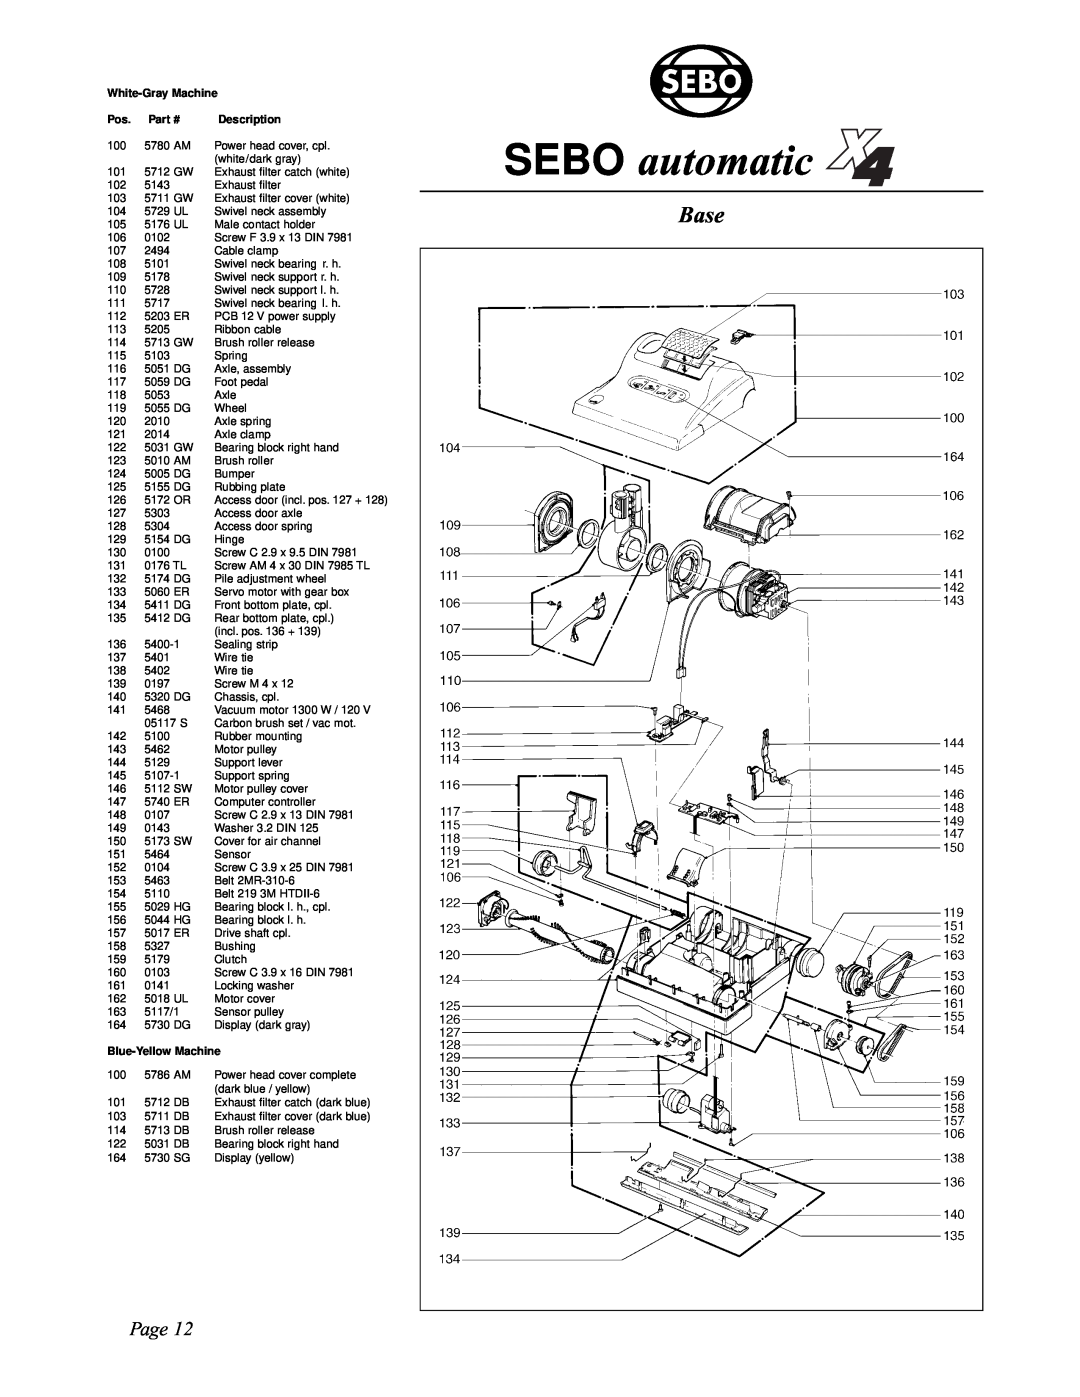 Sebo X5, X4 manual SEBO automatic, Base, Page, White-GrayMachine, Description, Blue-YellowMachine 